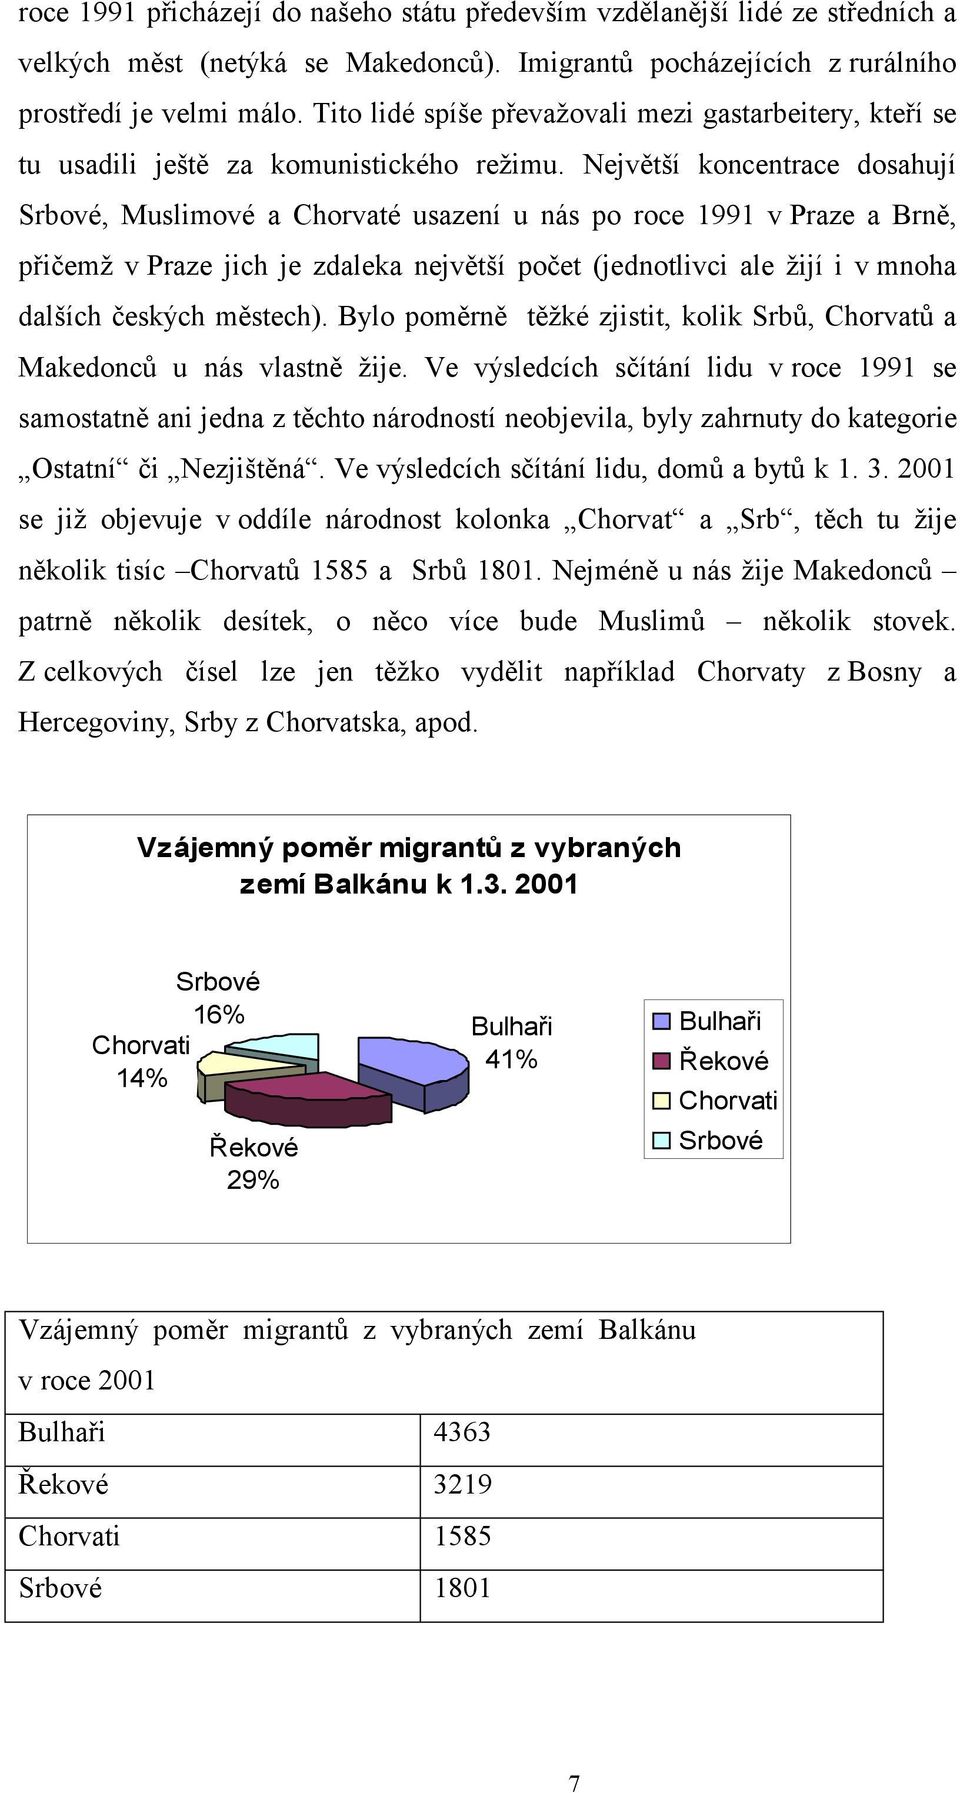 Největší koncentrace dosahují Srbové, Muslimové a Chorvaté usazení u nás po roce 1991 v Praze a Brně, přičemž v Praze jich je zdaleka největší počet (jednotlivci ale žijí i v mnoha dalších českých